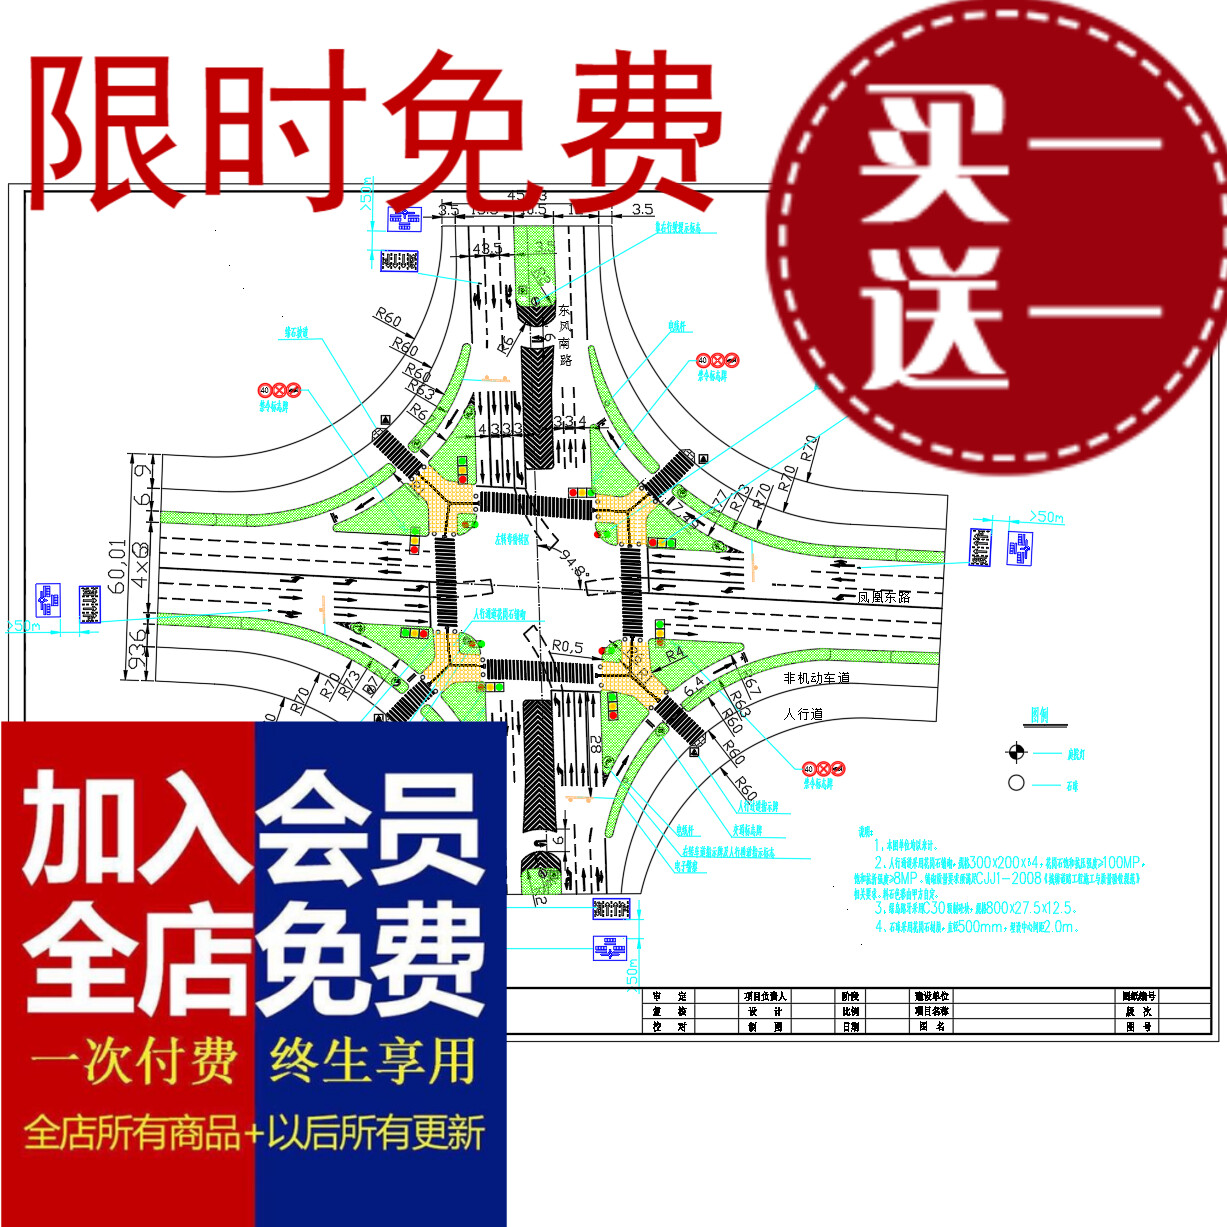 道路十字路口交通规划设计方案图CAD图dwg文件